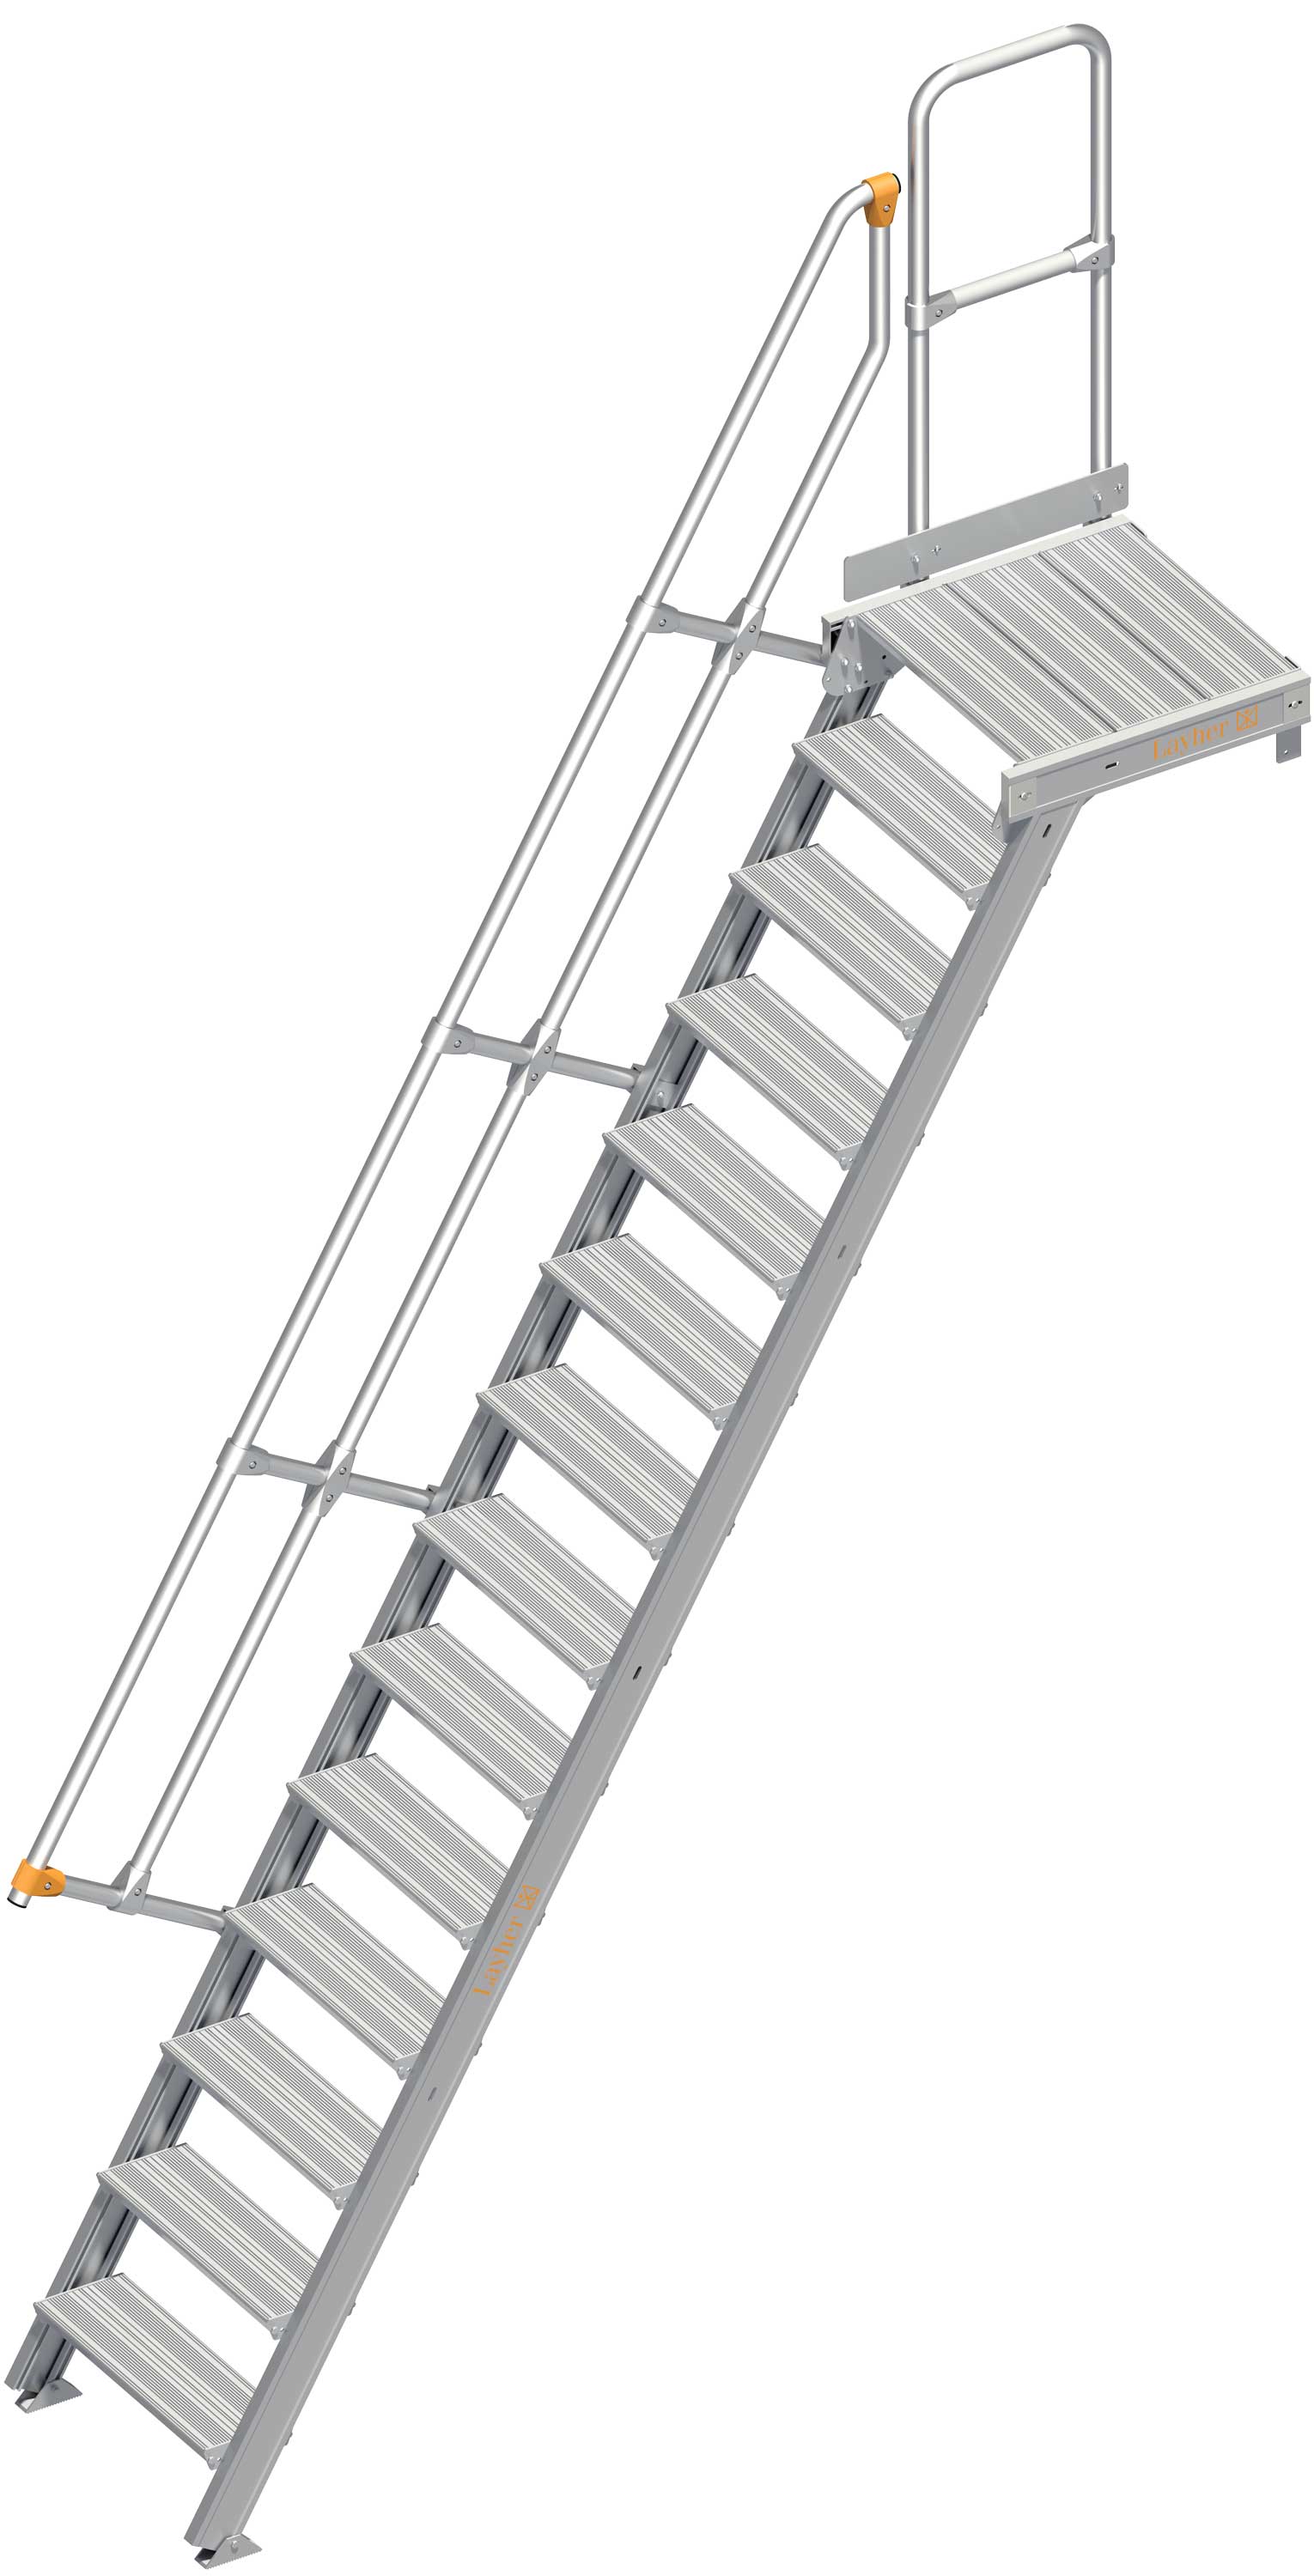 Layher Plattformtreppe 60° 14 Stufen - 600 mm breit